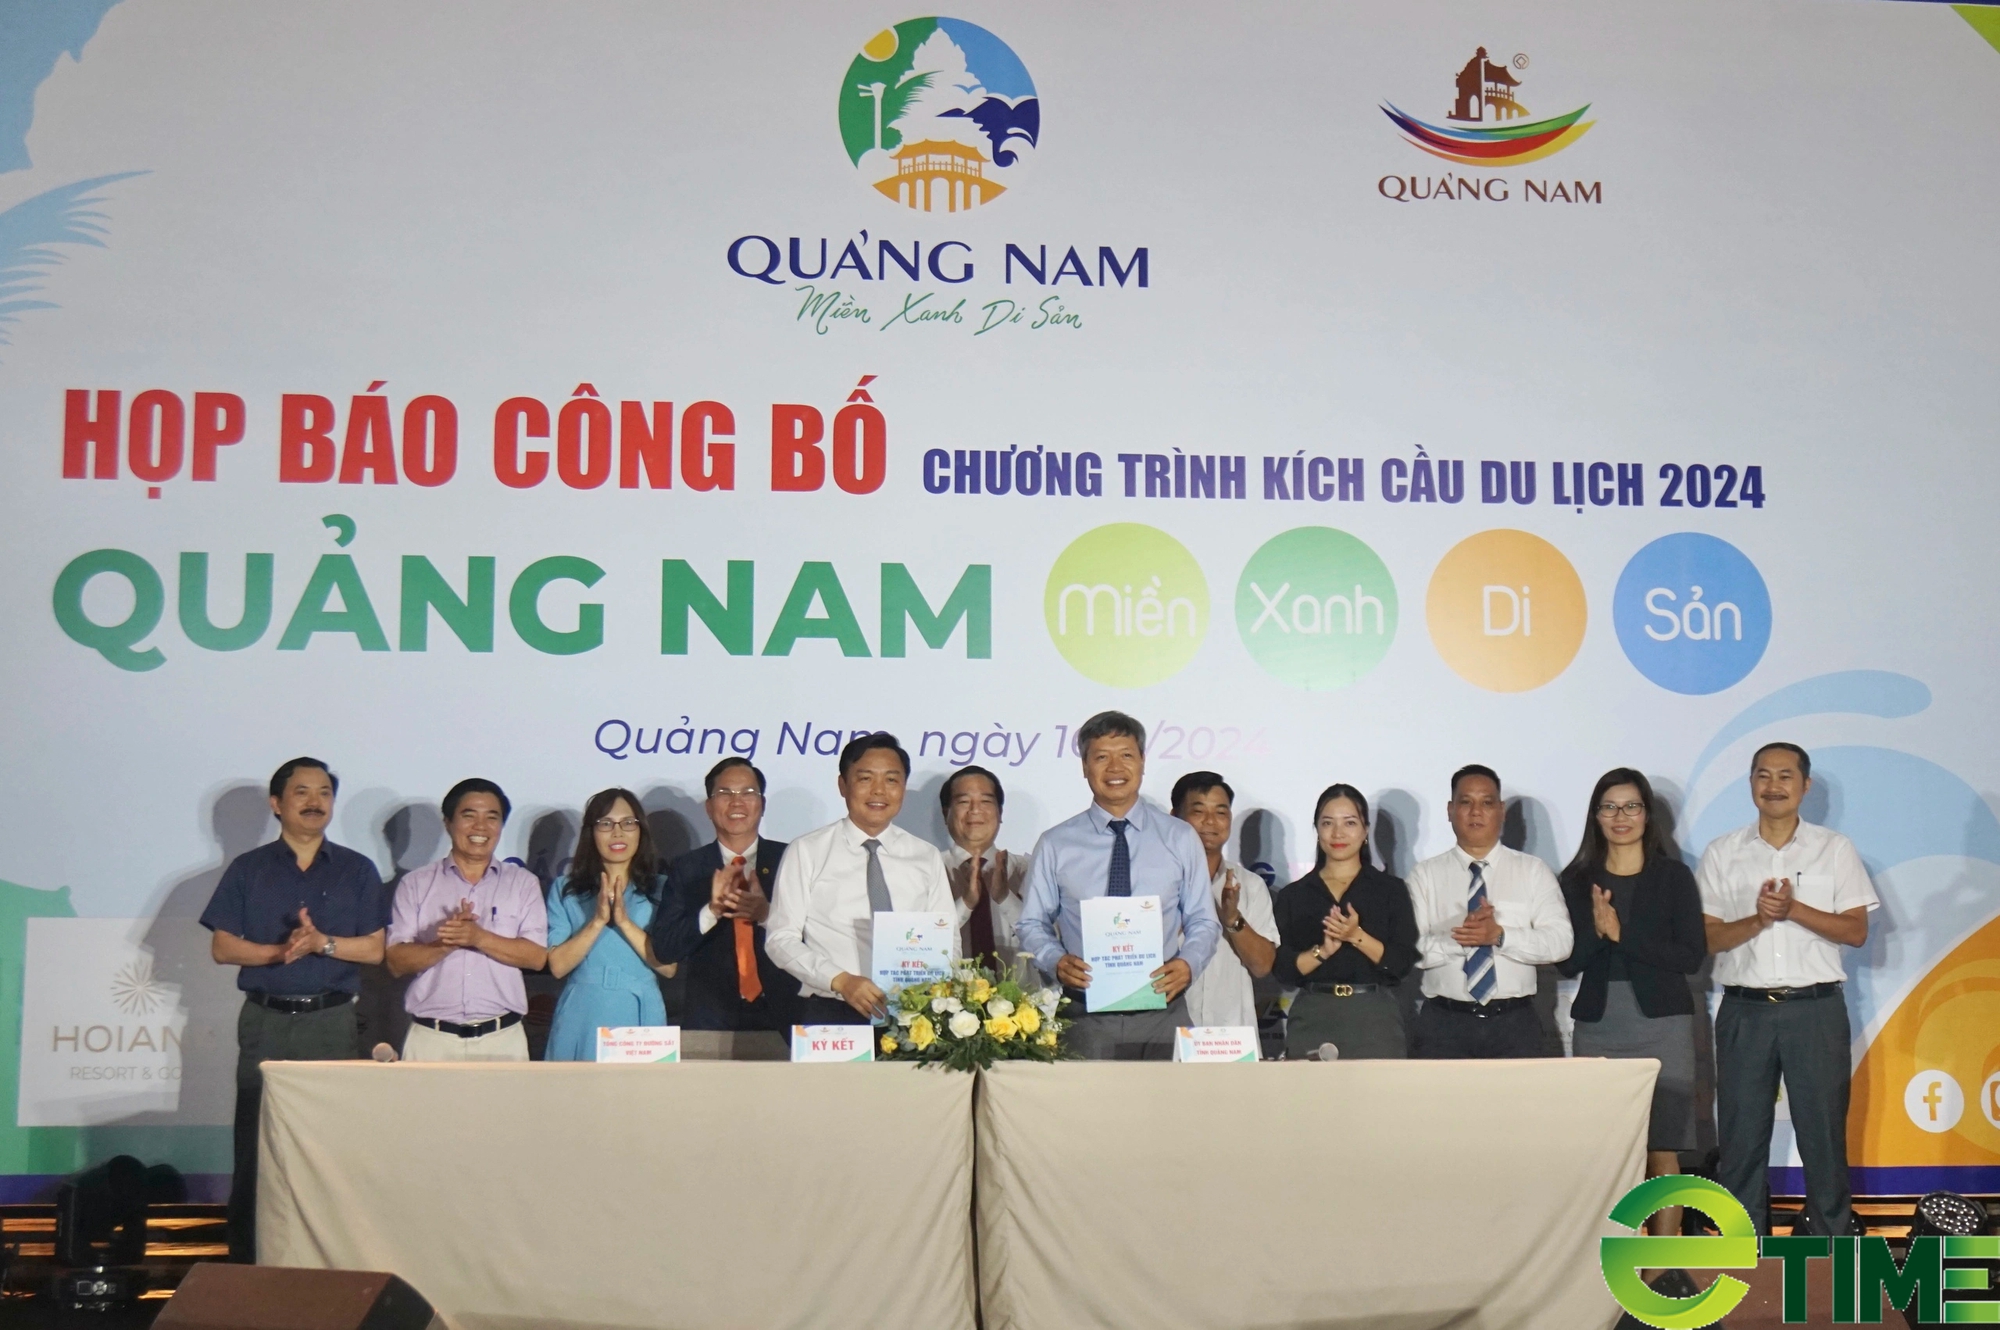 Hơn 100 doanh nghiệp tham gia kích cầu du lịch 2024 “Quảng Nam - Miền xanh Di sản”- Ảnh 1.